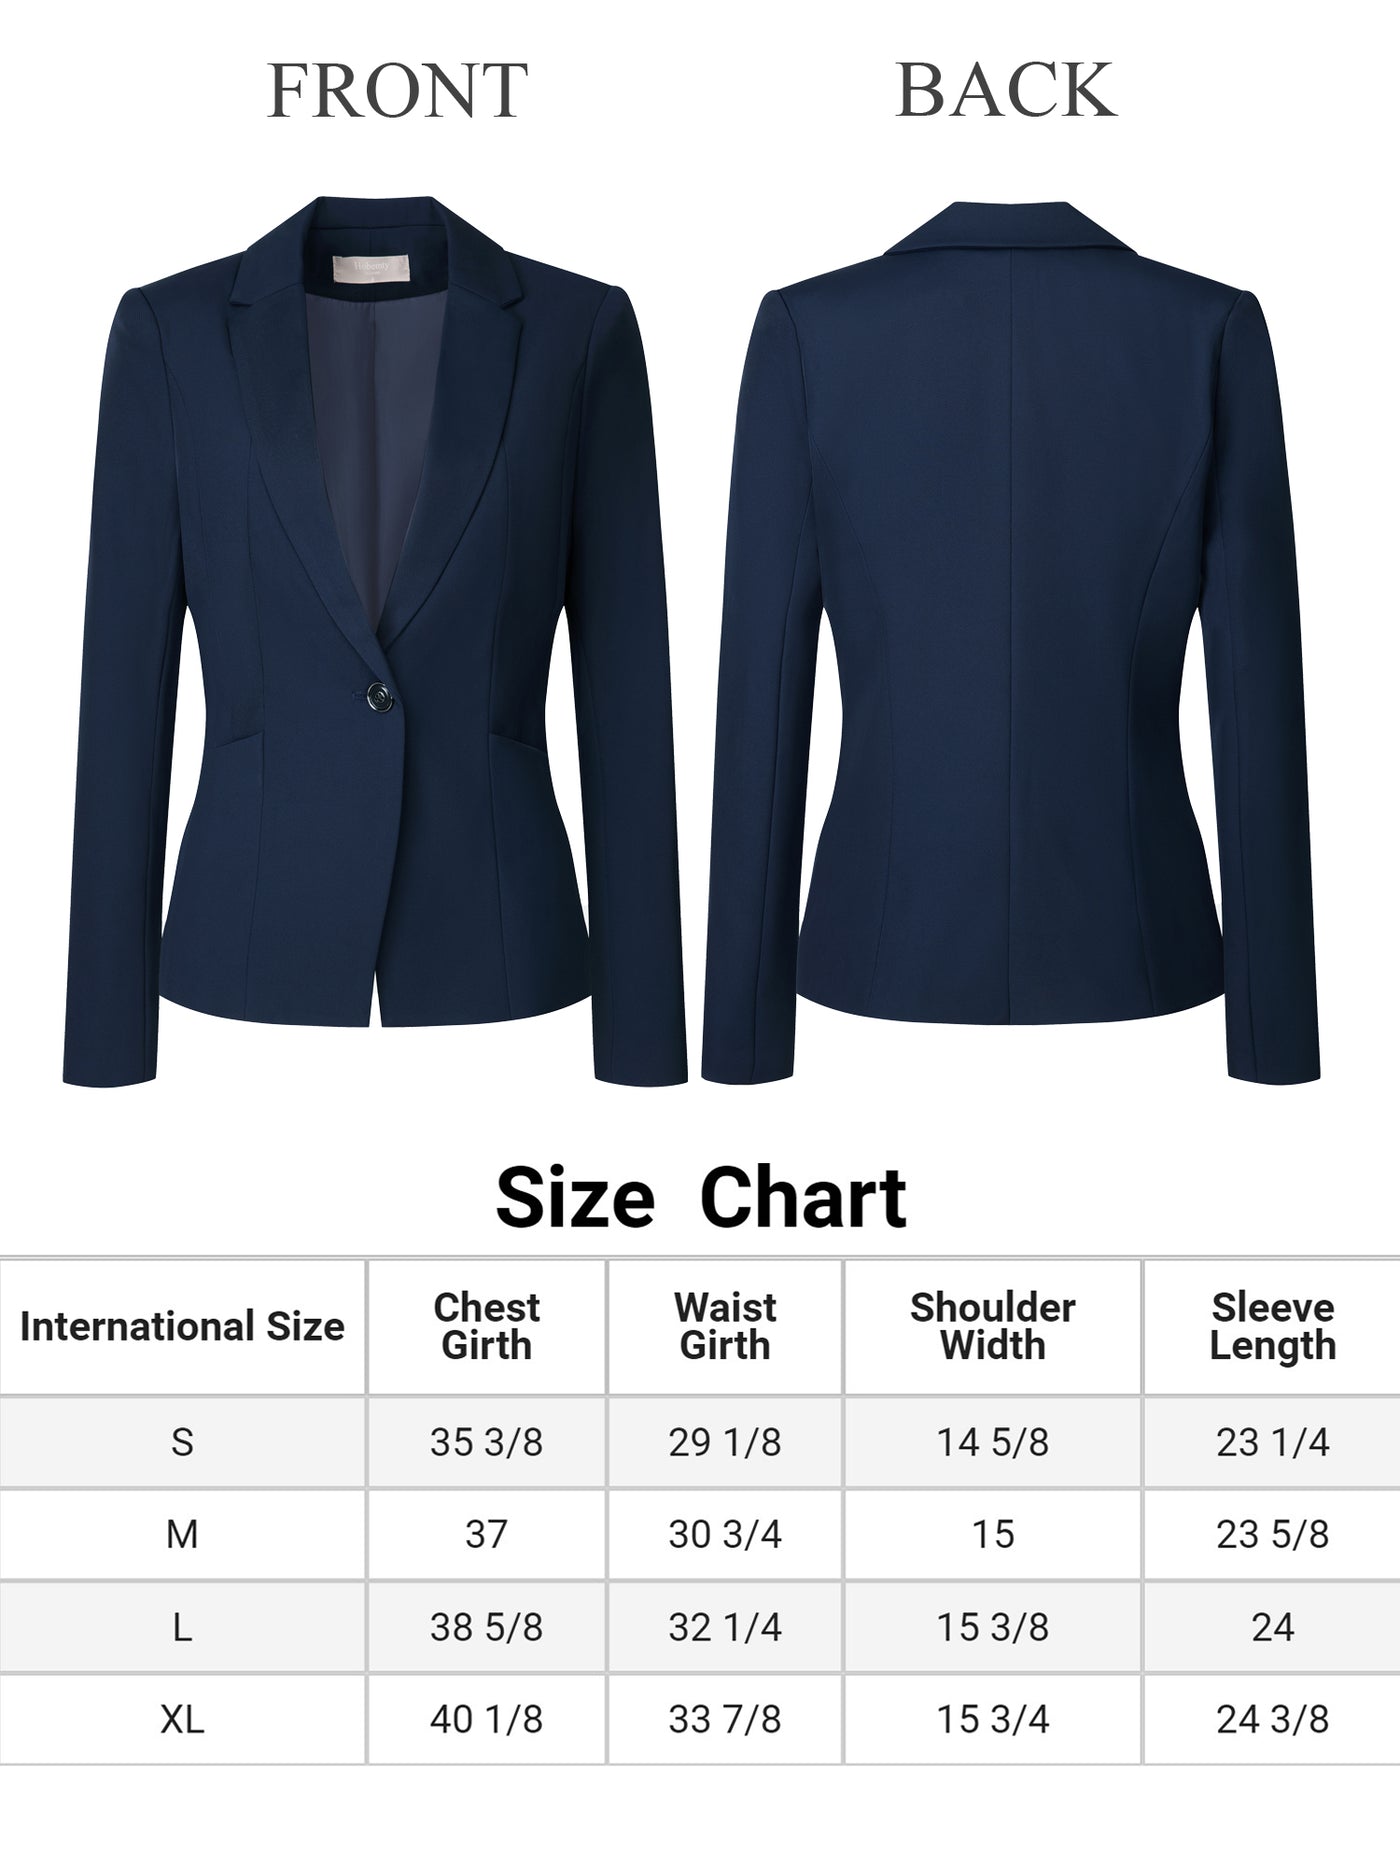 Bublédon Women's Professional Blazer One Button Work Business Suit Jacket